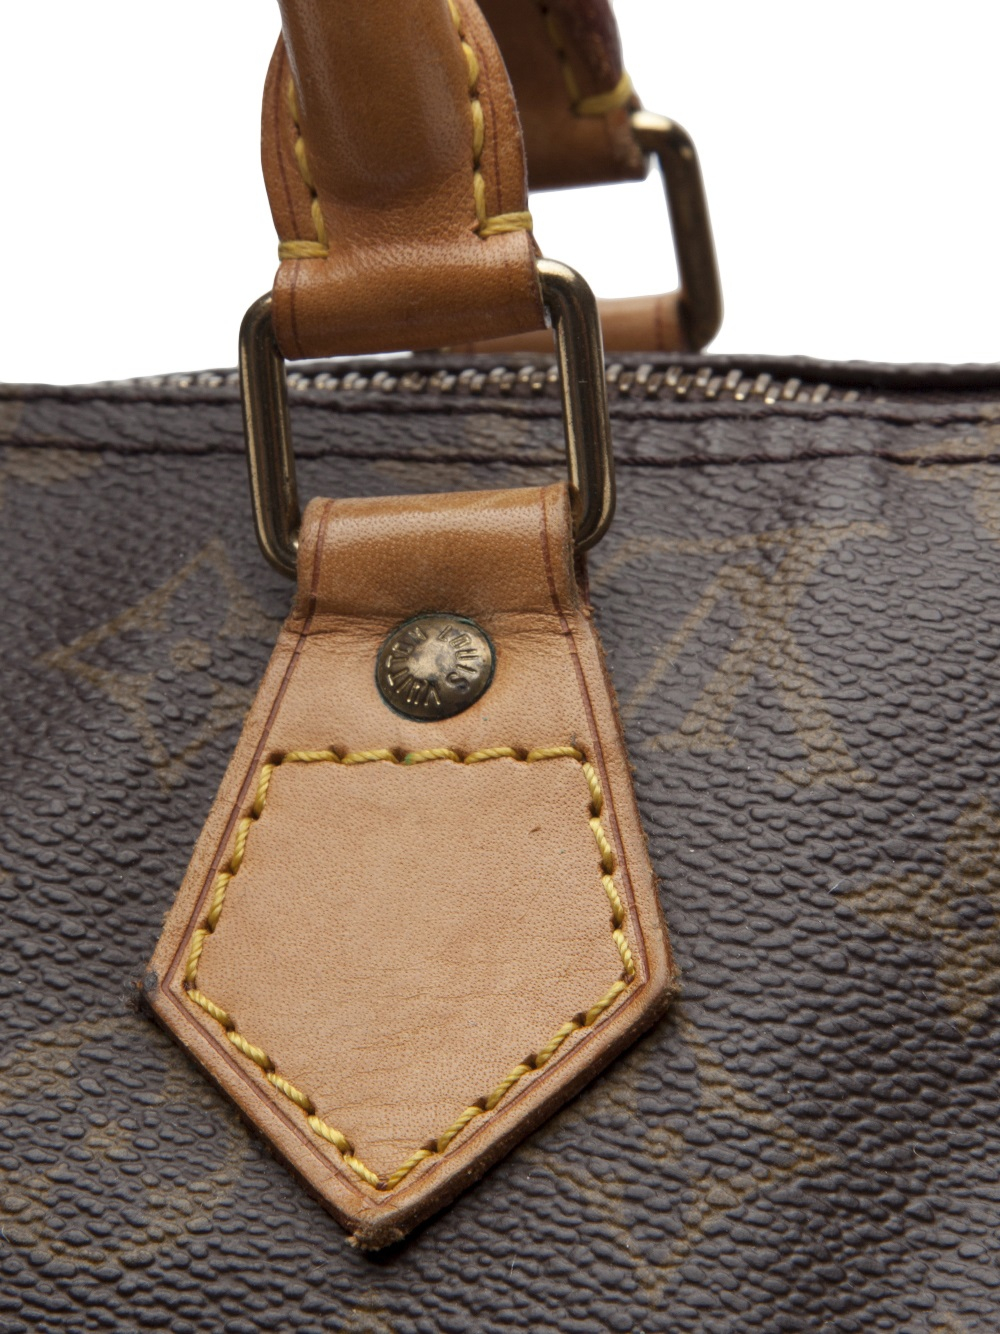 Lyst - Louis Vuitton Speedy 40 Monogram Bag in Brown